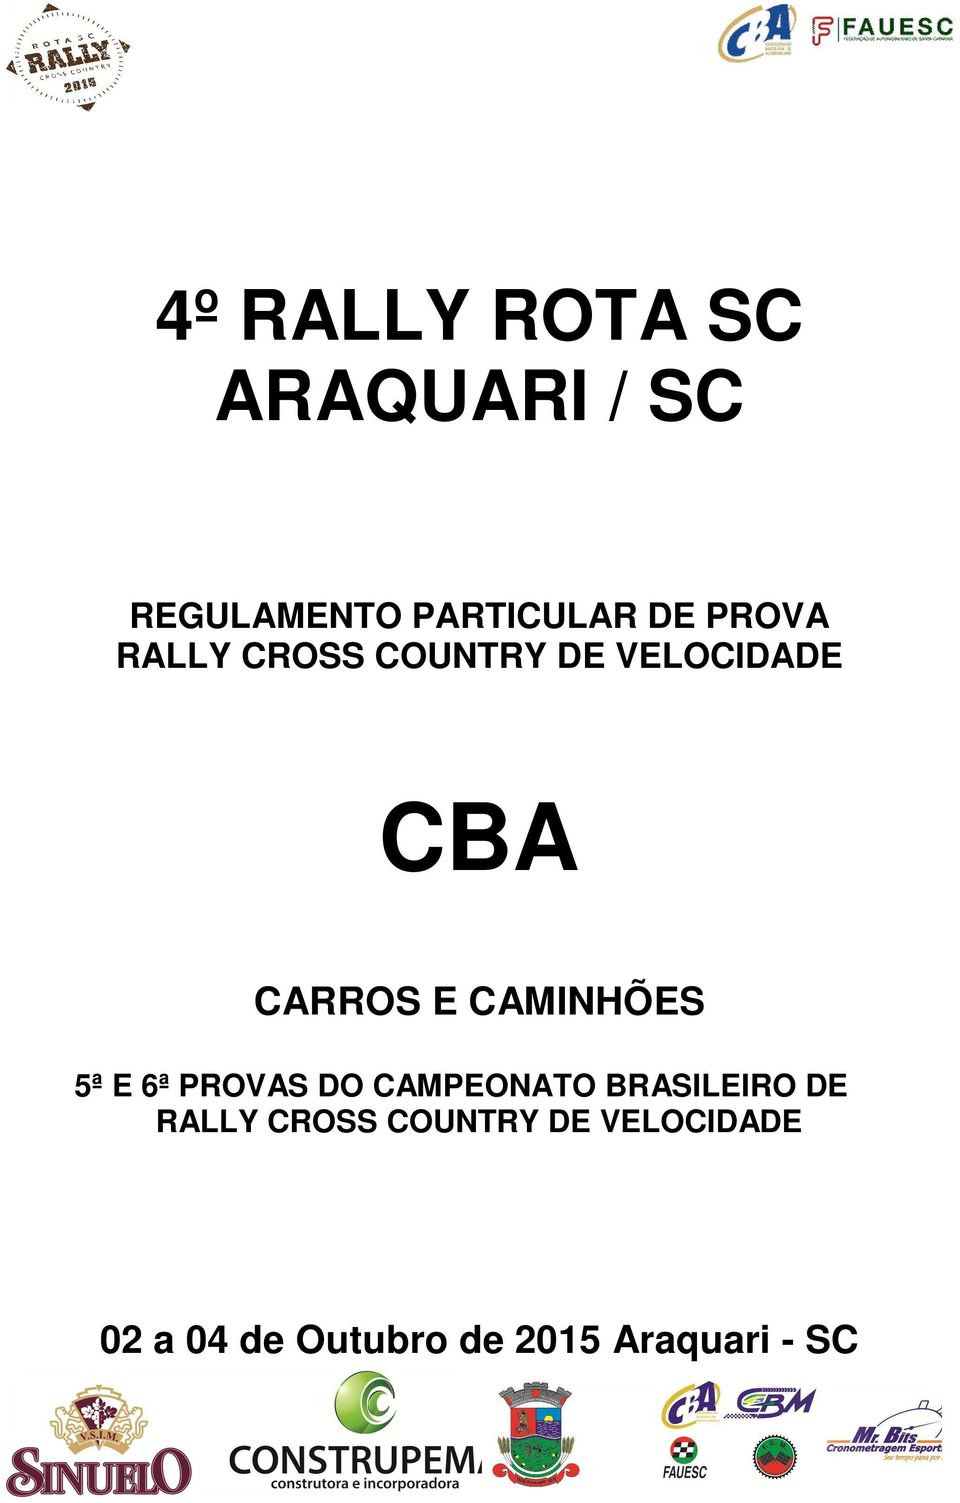 CAMINHÕES 5ª E 6ª PROVAS DO CAMPEONATO BRASILEIRO DE RALLY